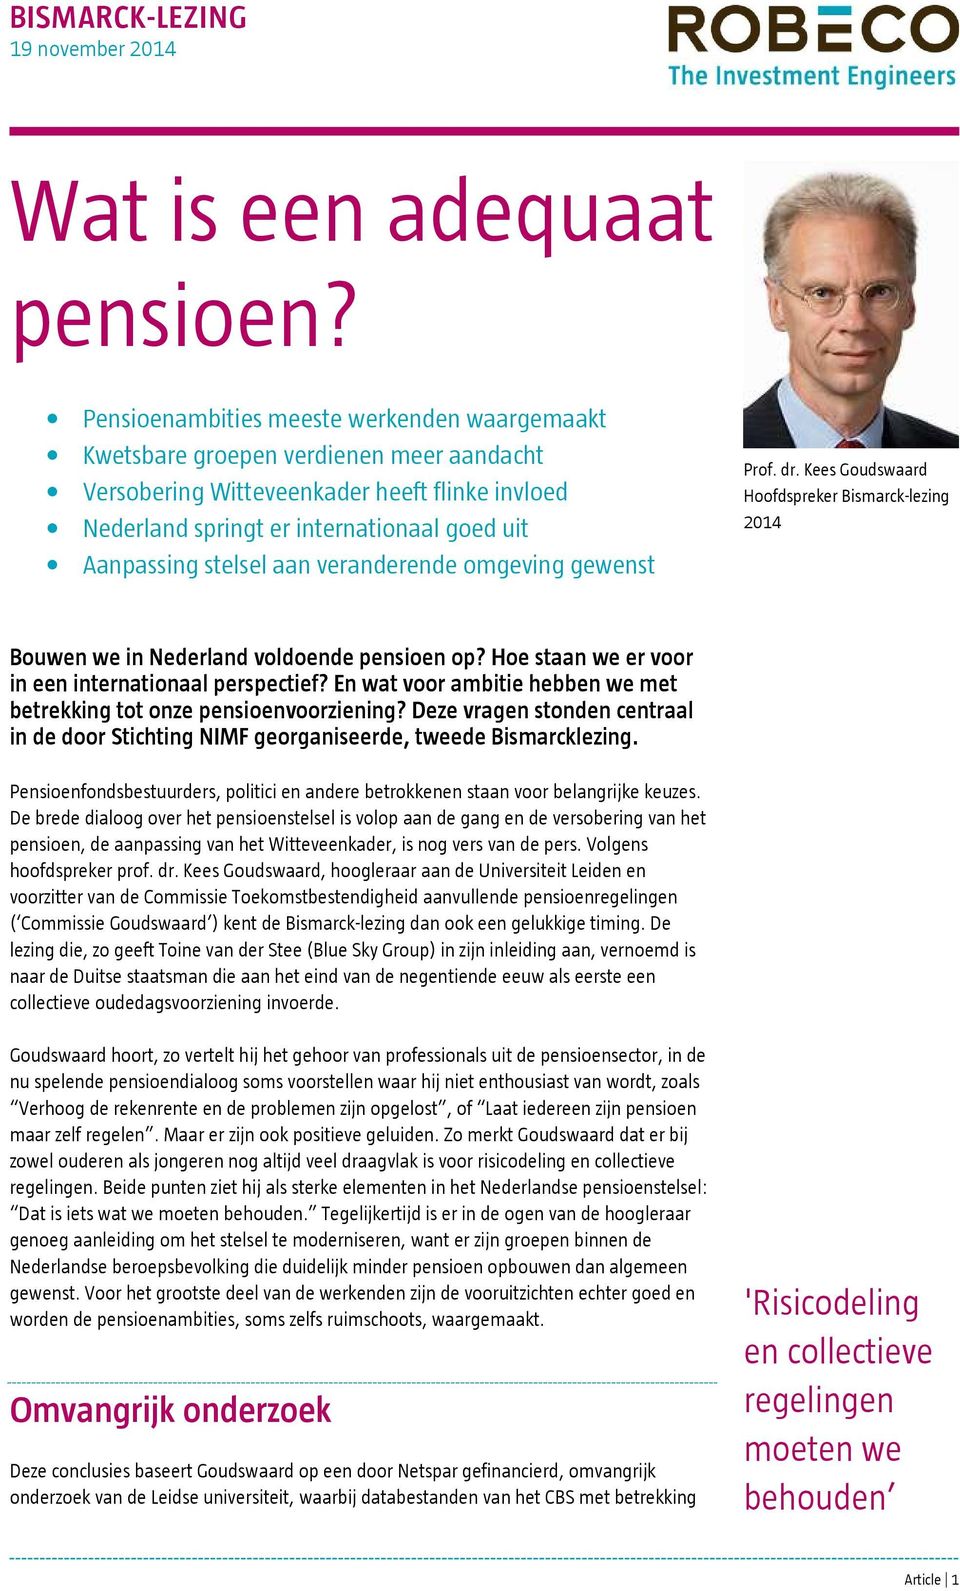 aan veranderende omgeving gewenst Prof. dr. Kees Goudswaard Hoofdspreker Bismarck-lezing 2014 Bouwen we in Nederland voldoende pensioen op? Hoe staan we er voor in een internationaal perspectief?